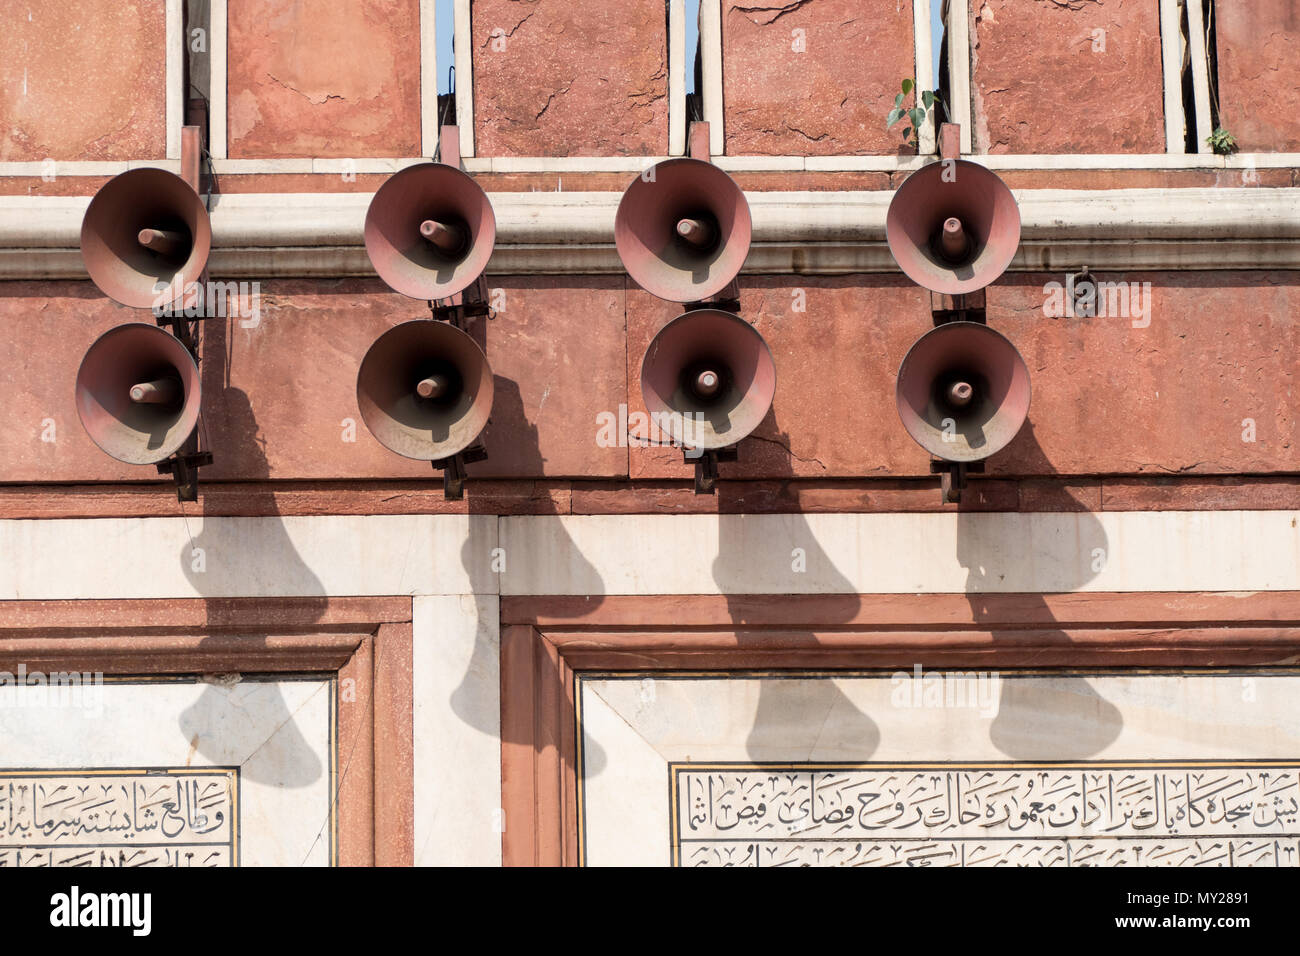 Lautsprecher an eine Moschee Stockfotografie - Alamy